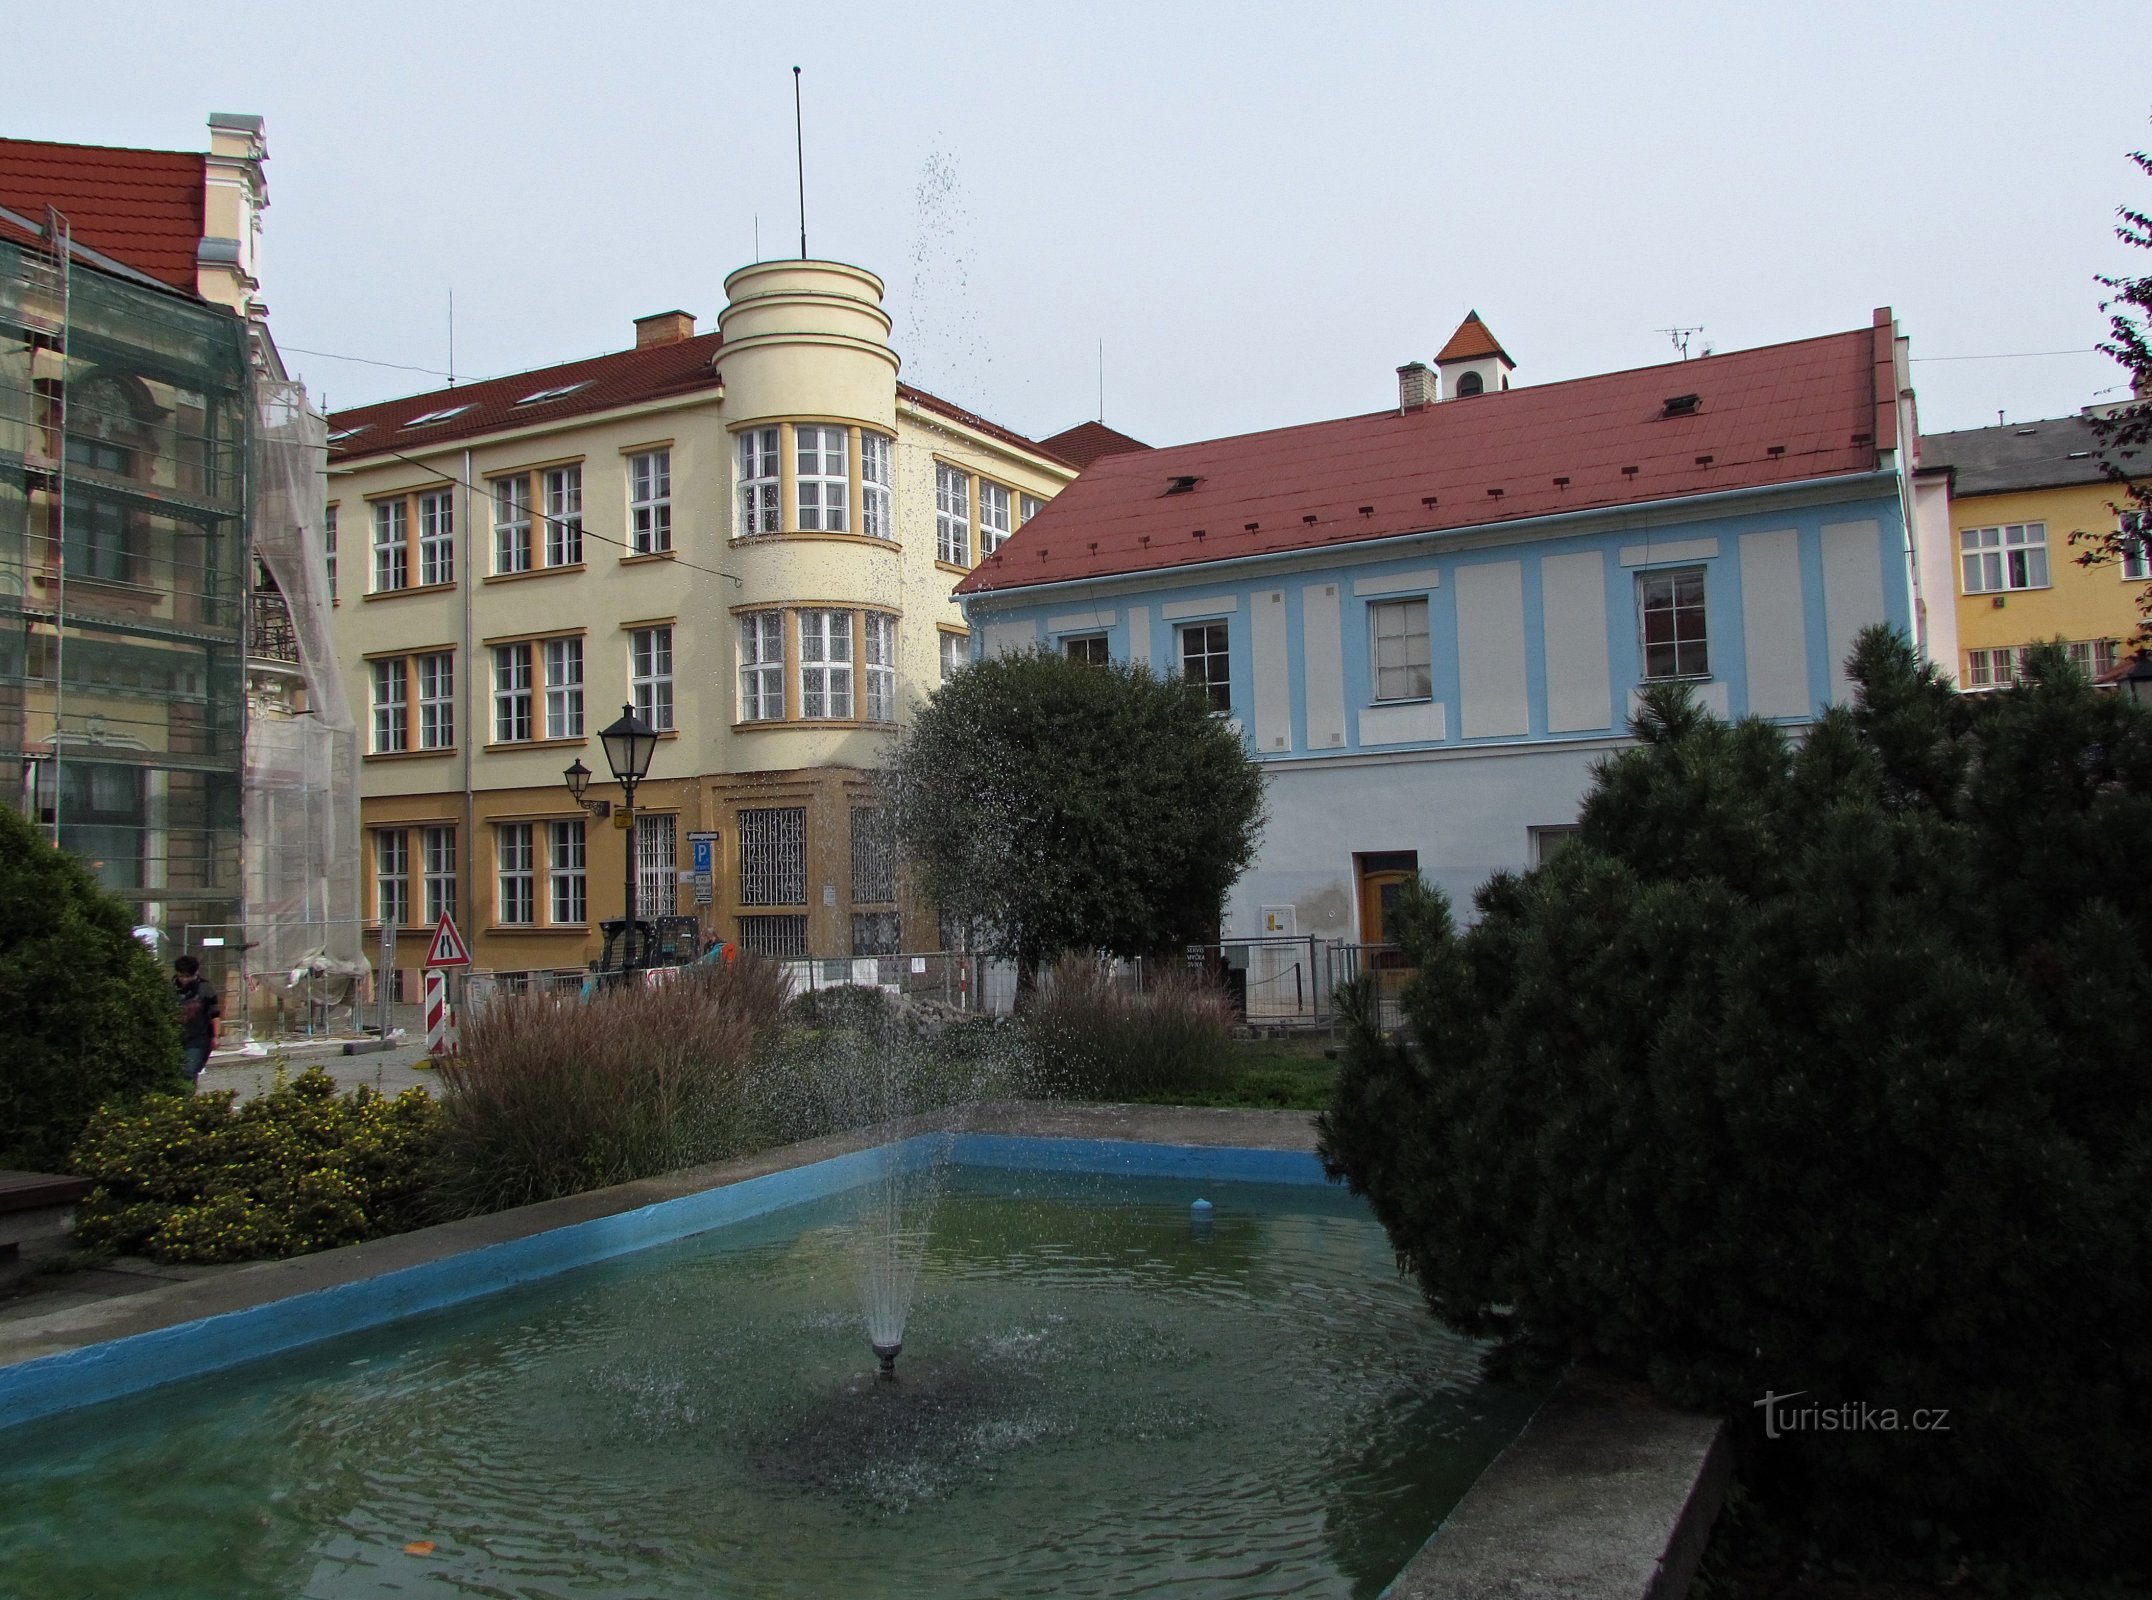 参观 Nové Jičín 的城堡并前往 Skalky